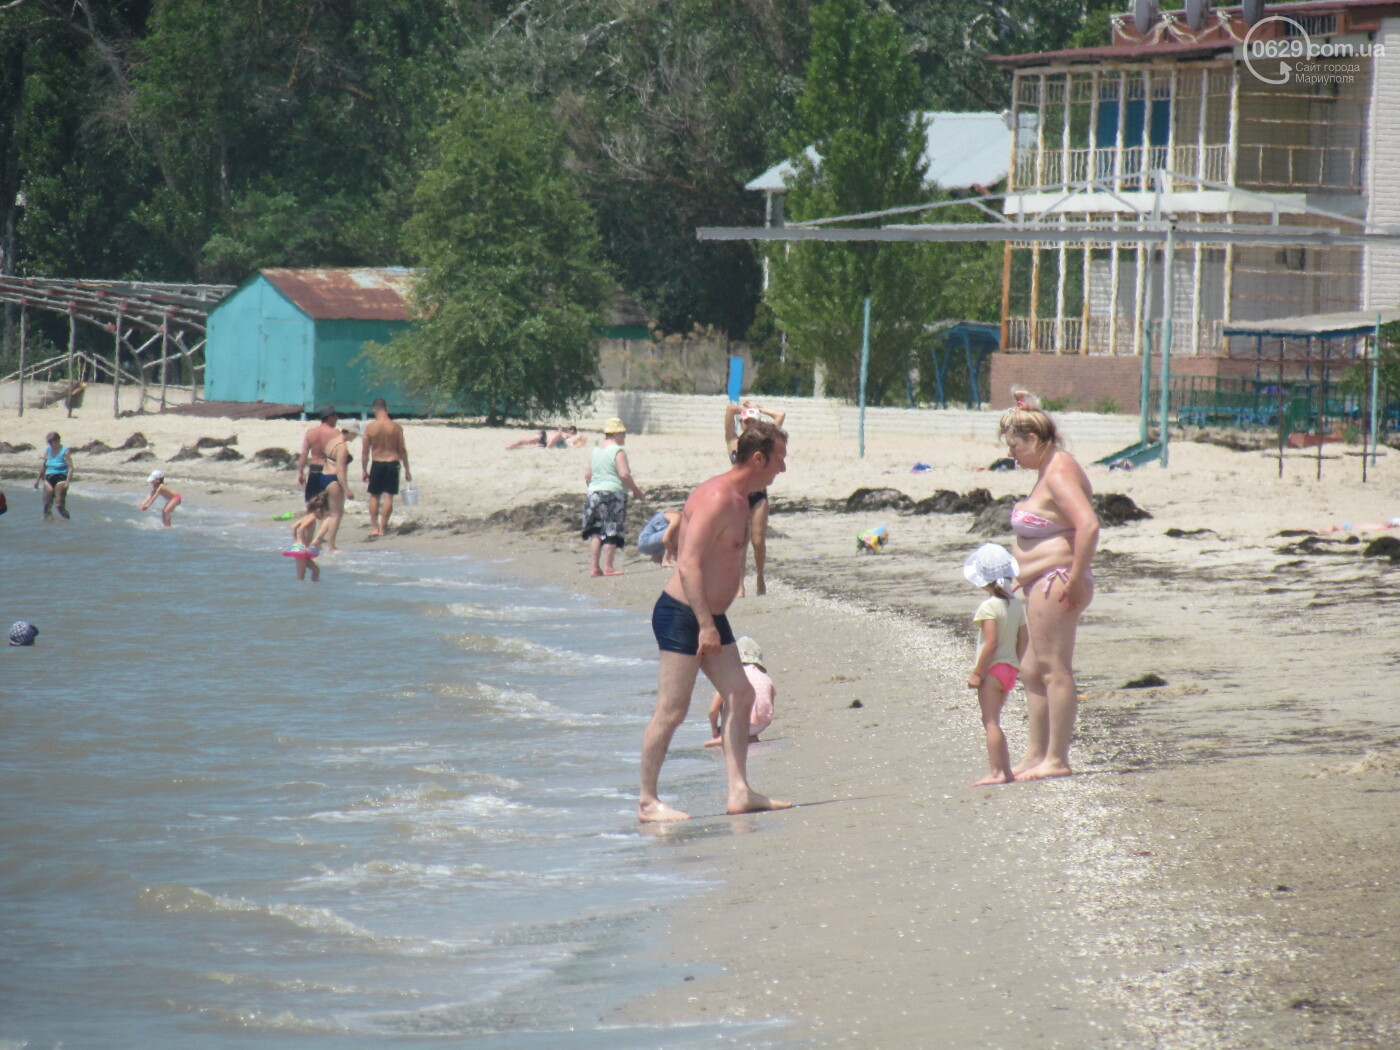 Речка Донецк пляж